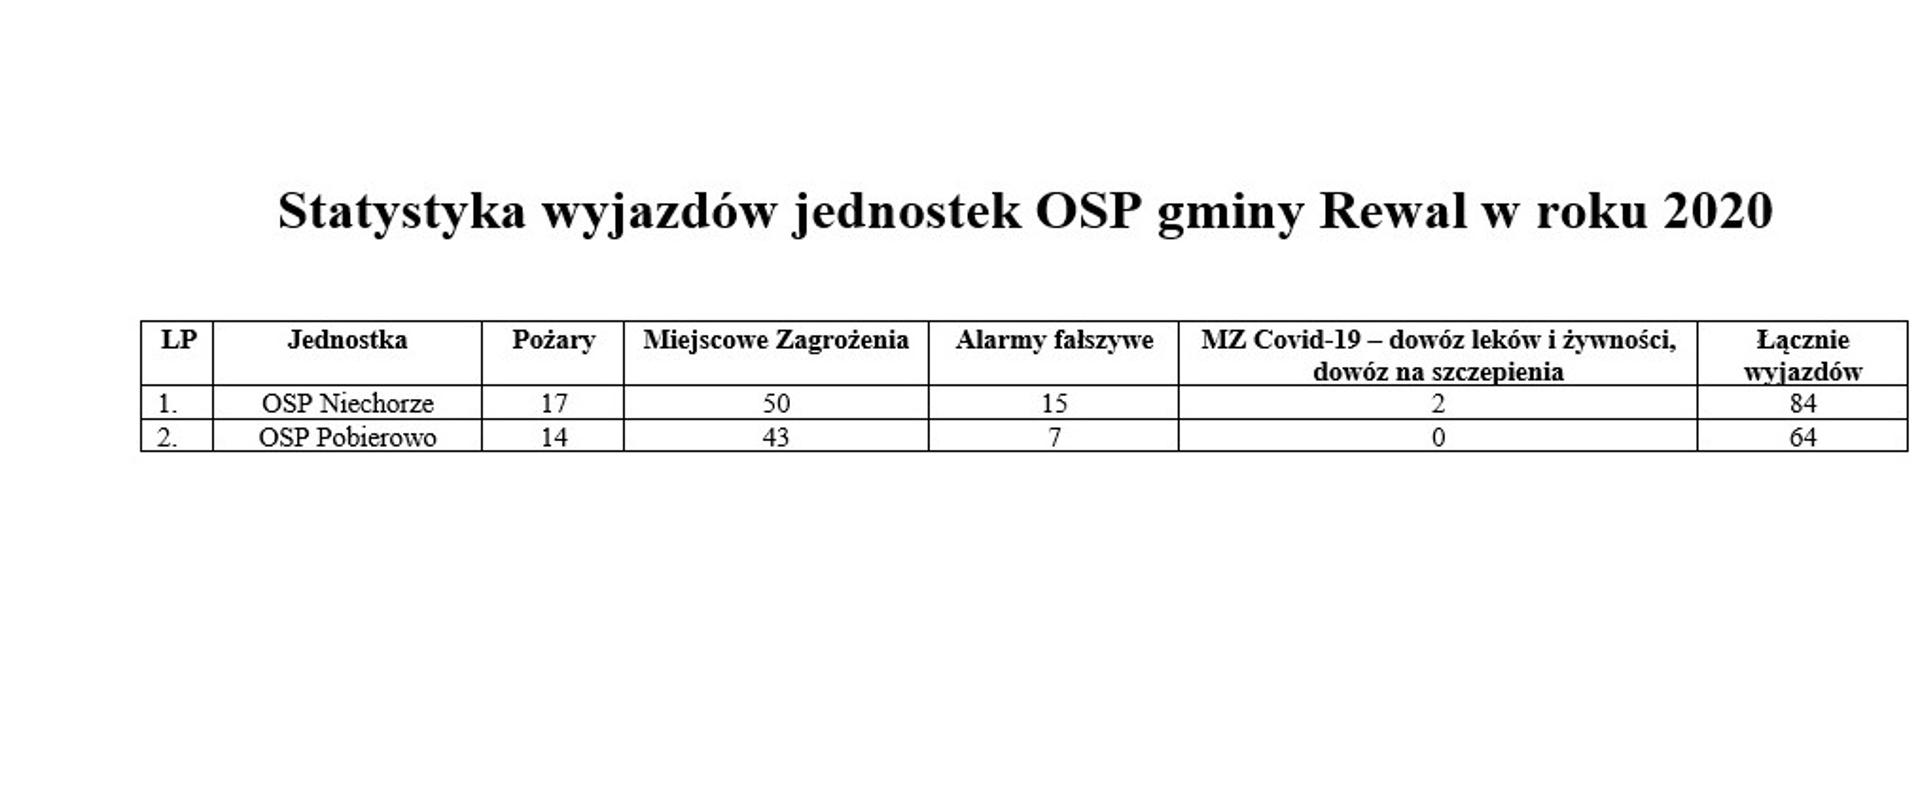 widoczna tabelka z wyjazdami OSP gminy Rewal